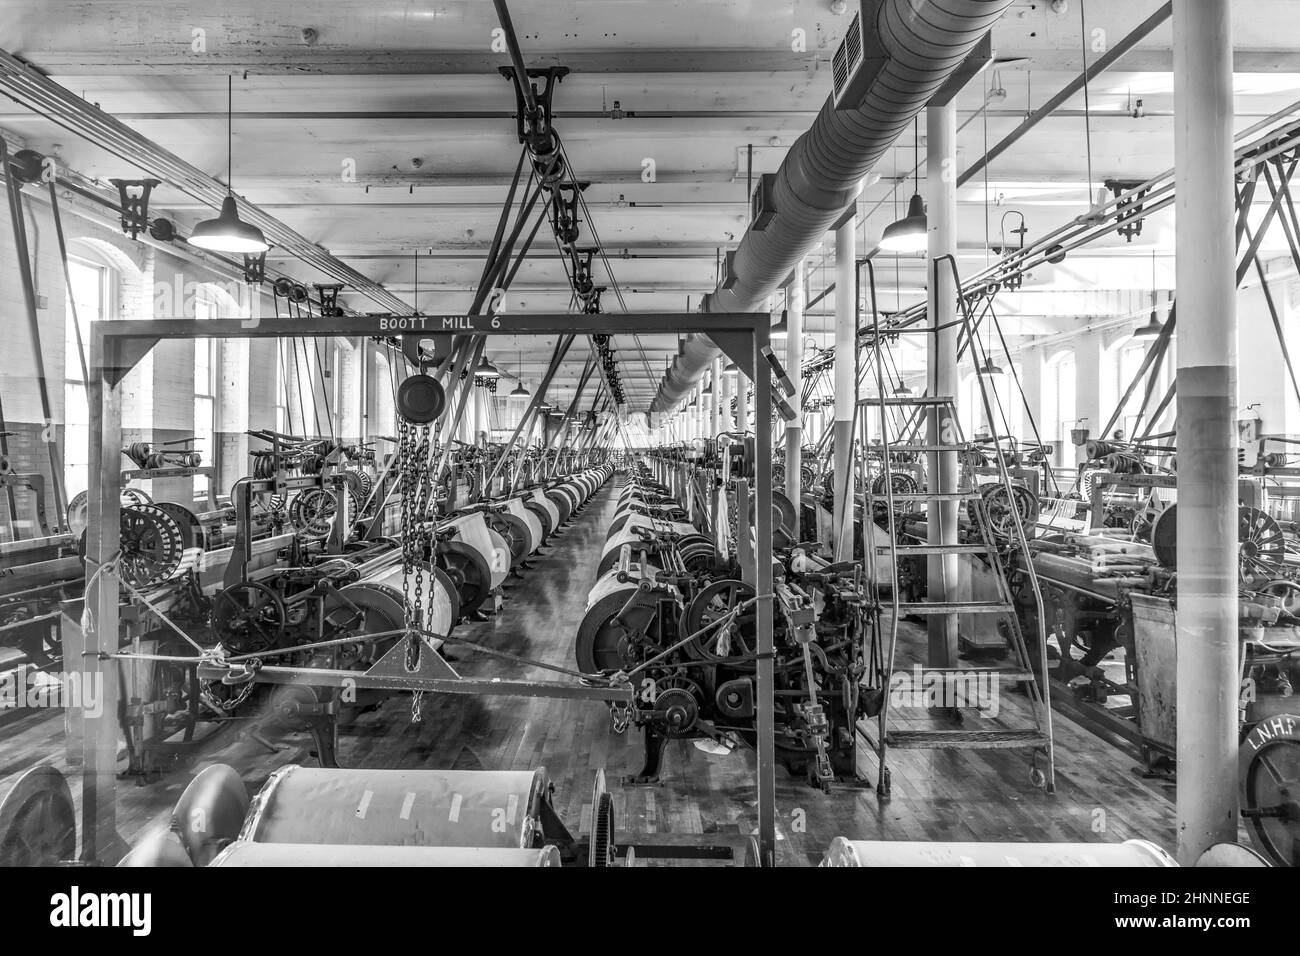 Besuch des Industriemuseums Boott Baumwollmühlen in Lowell, USA Stockfoto